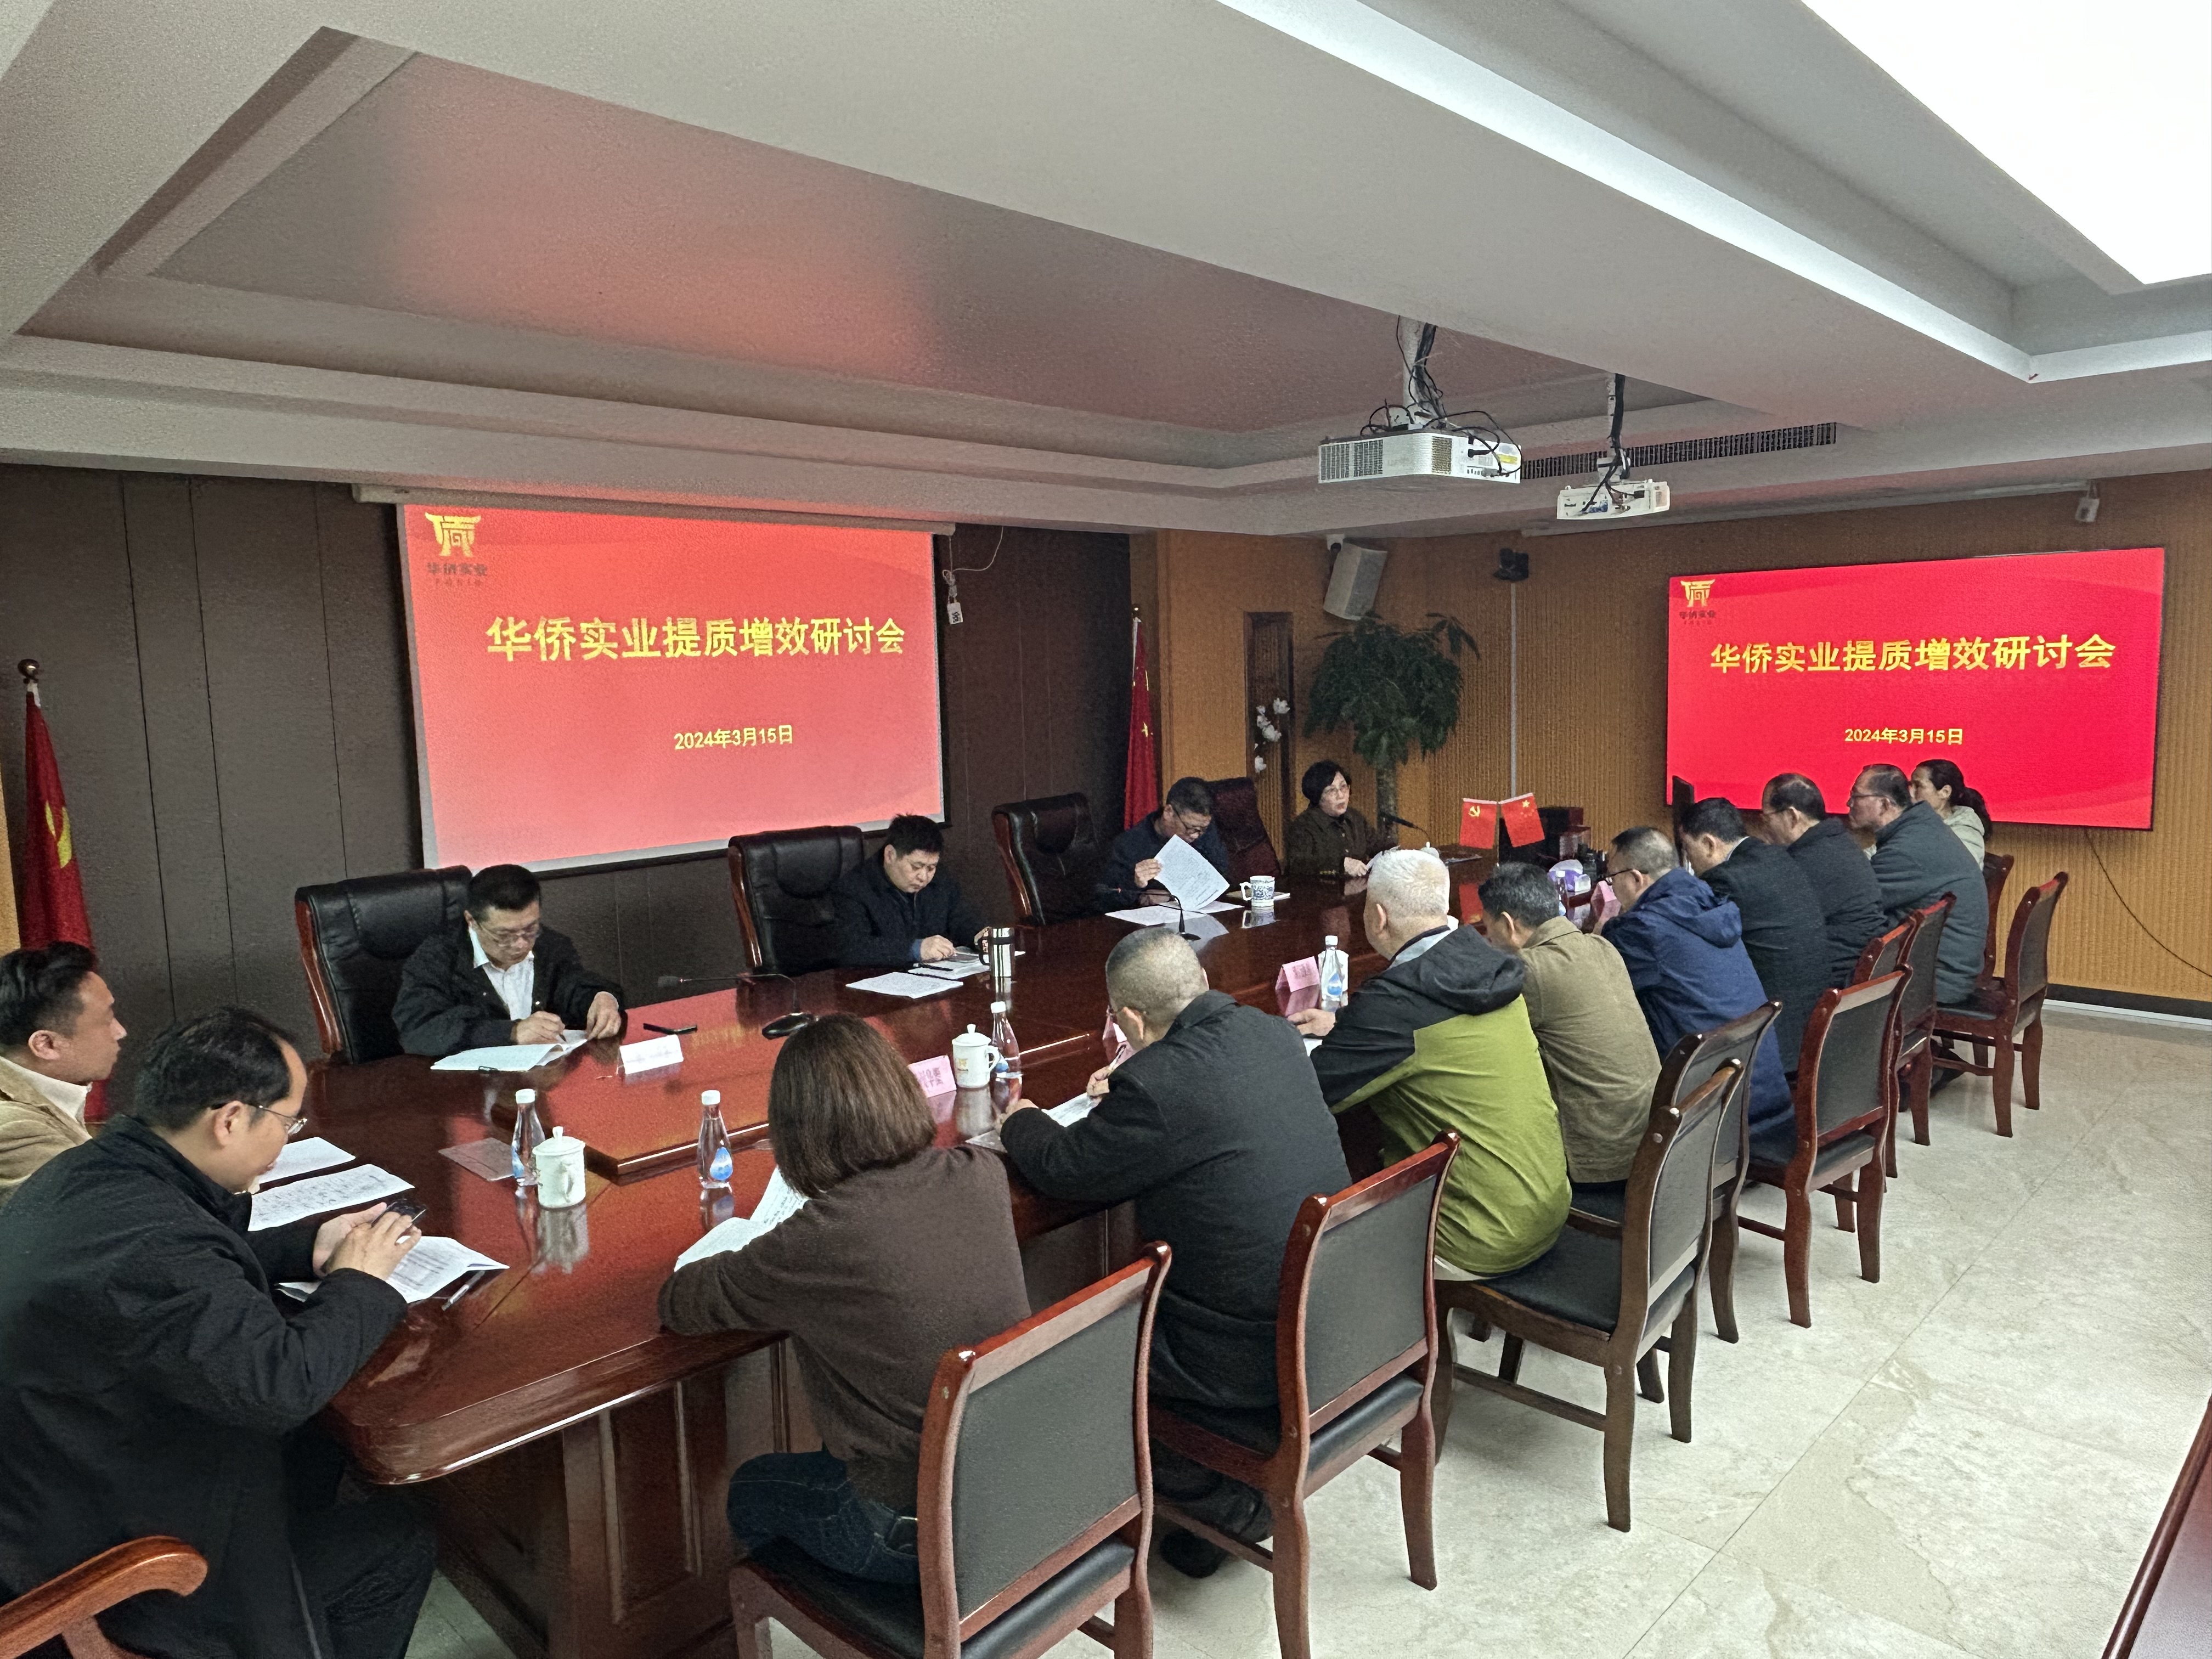 華僑實業召開提質增效研討會